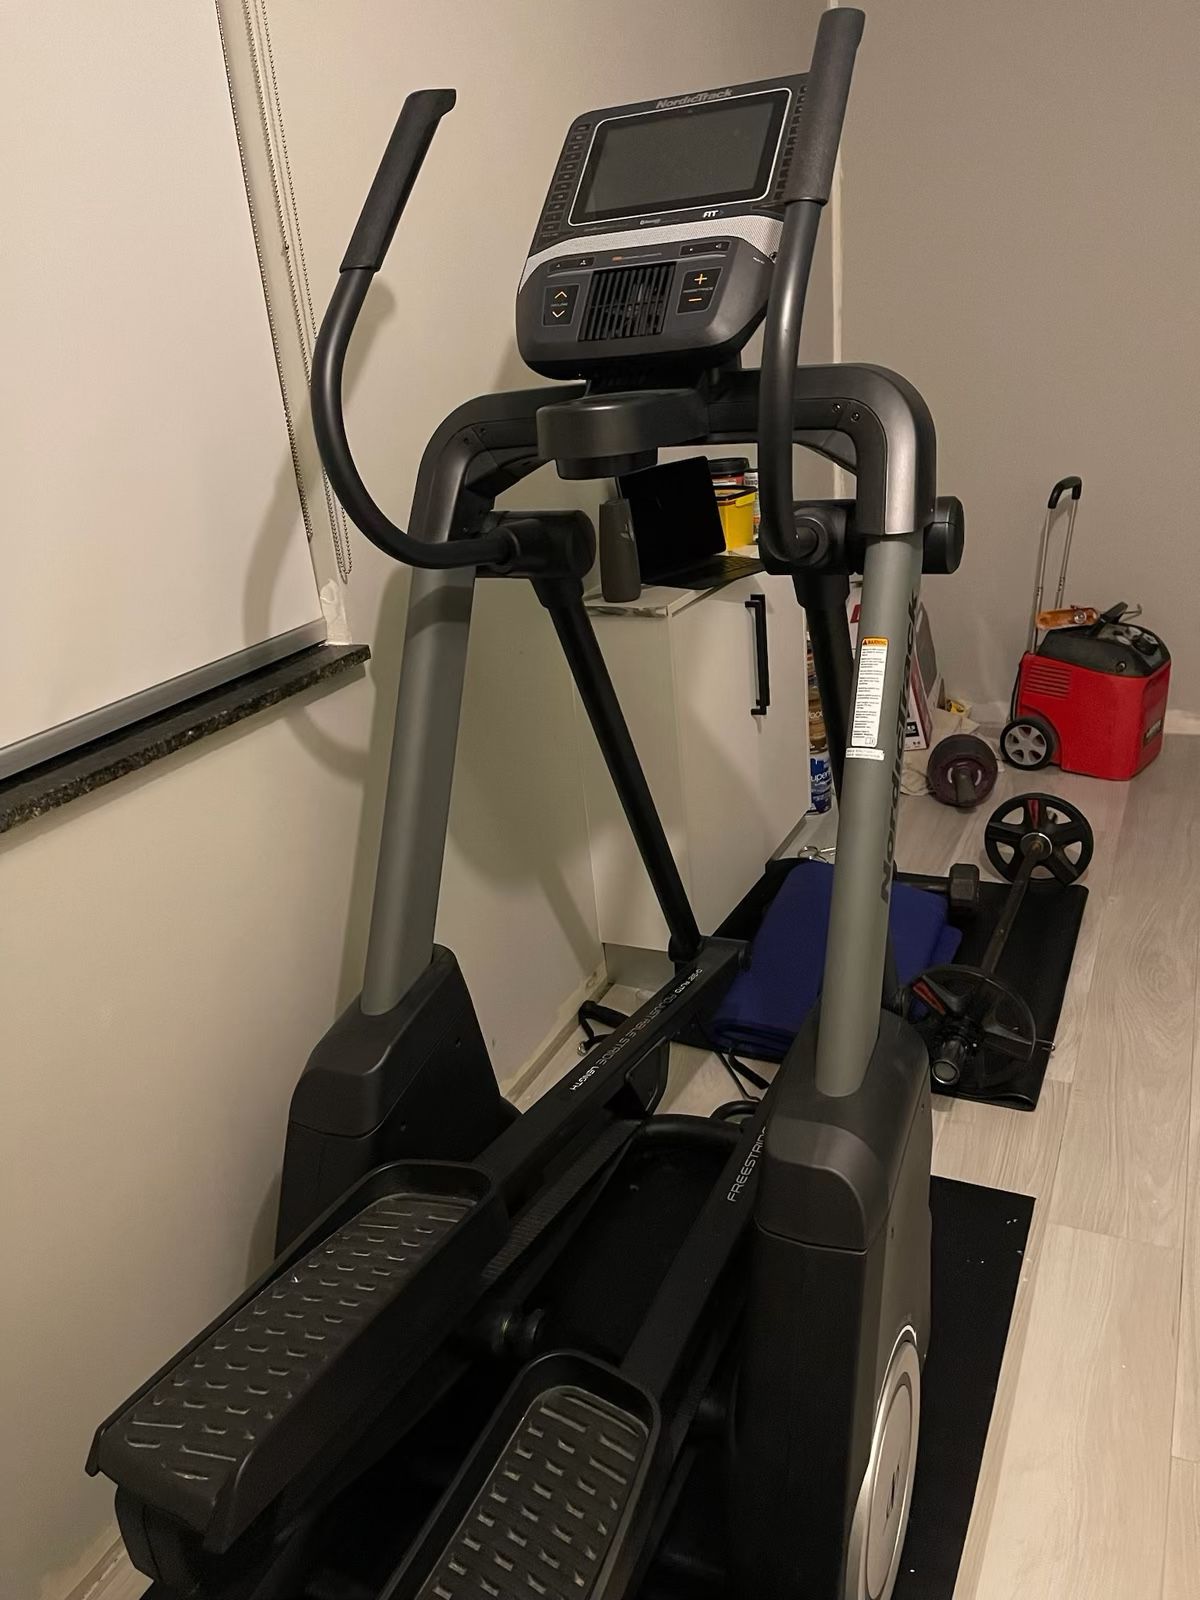 Nordictrack elliptical treadmill 